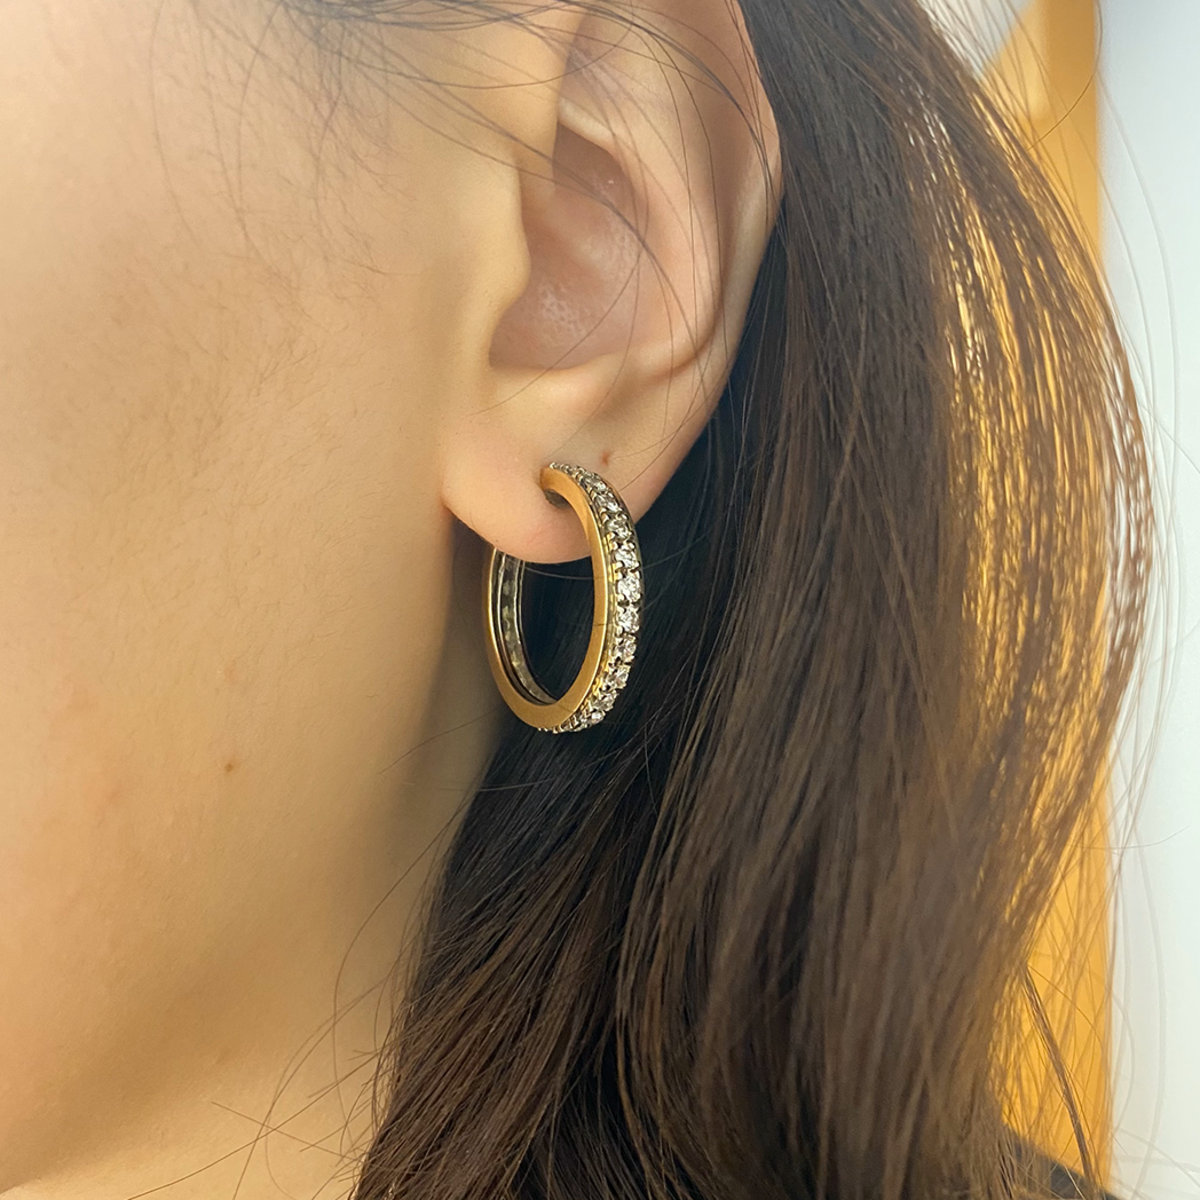 1970s 14KT Yellow Gold Diamond Hoop Earrings worn on ear